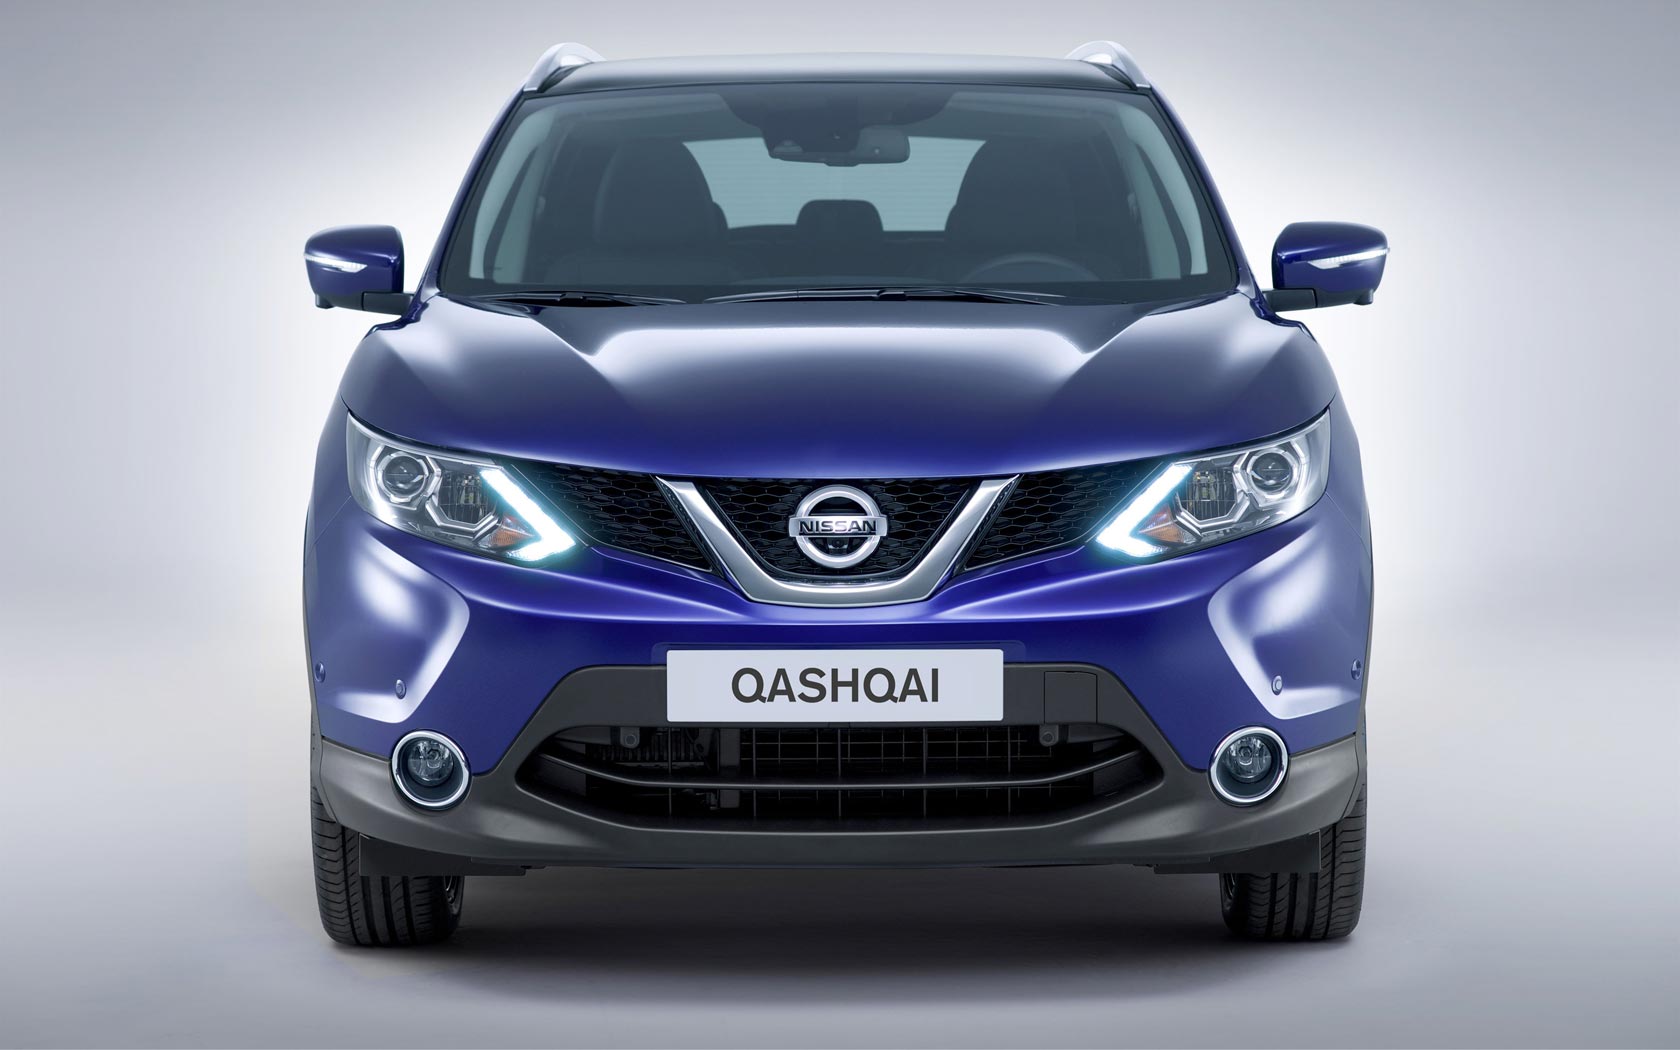  Nissan Qashqai (2014-2018)